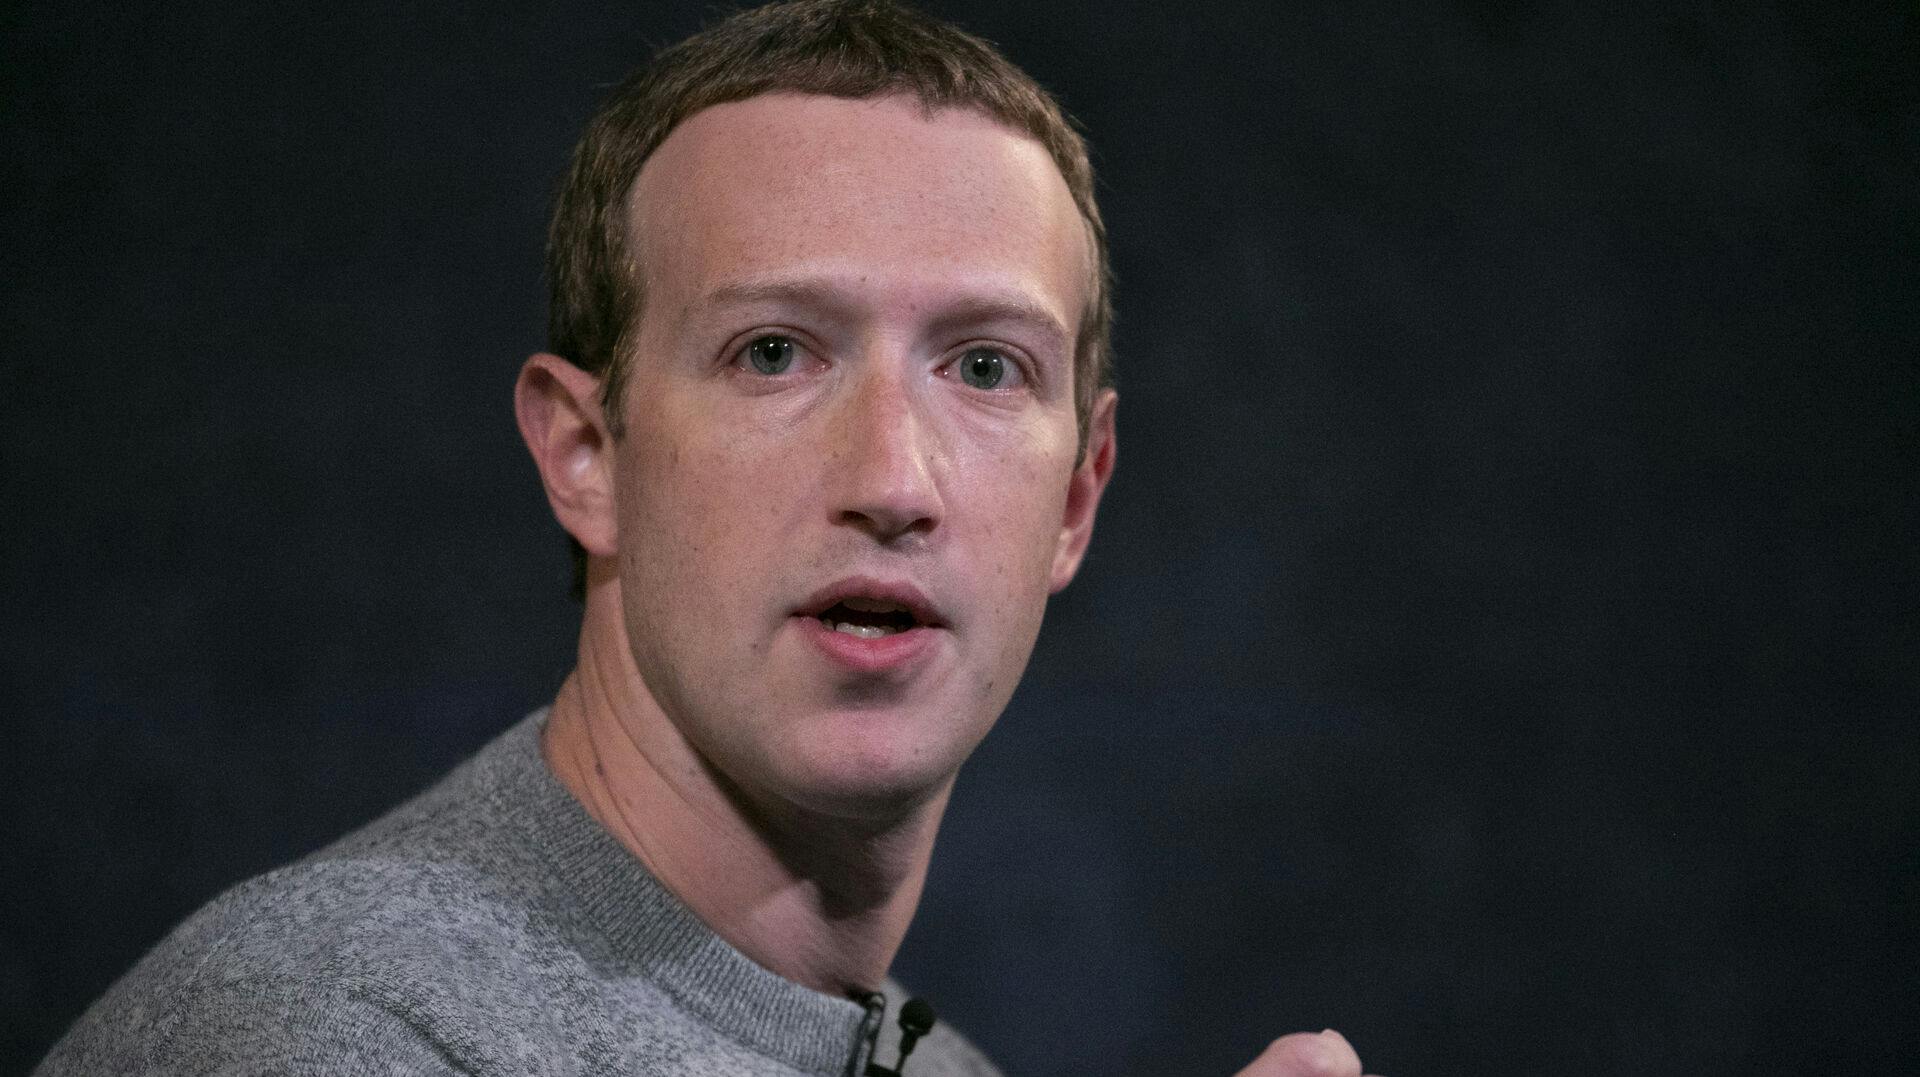 Mark Zuckerberg er 39 år og har været med til at grundlægge blandt andet Facebook.